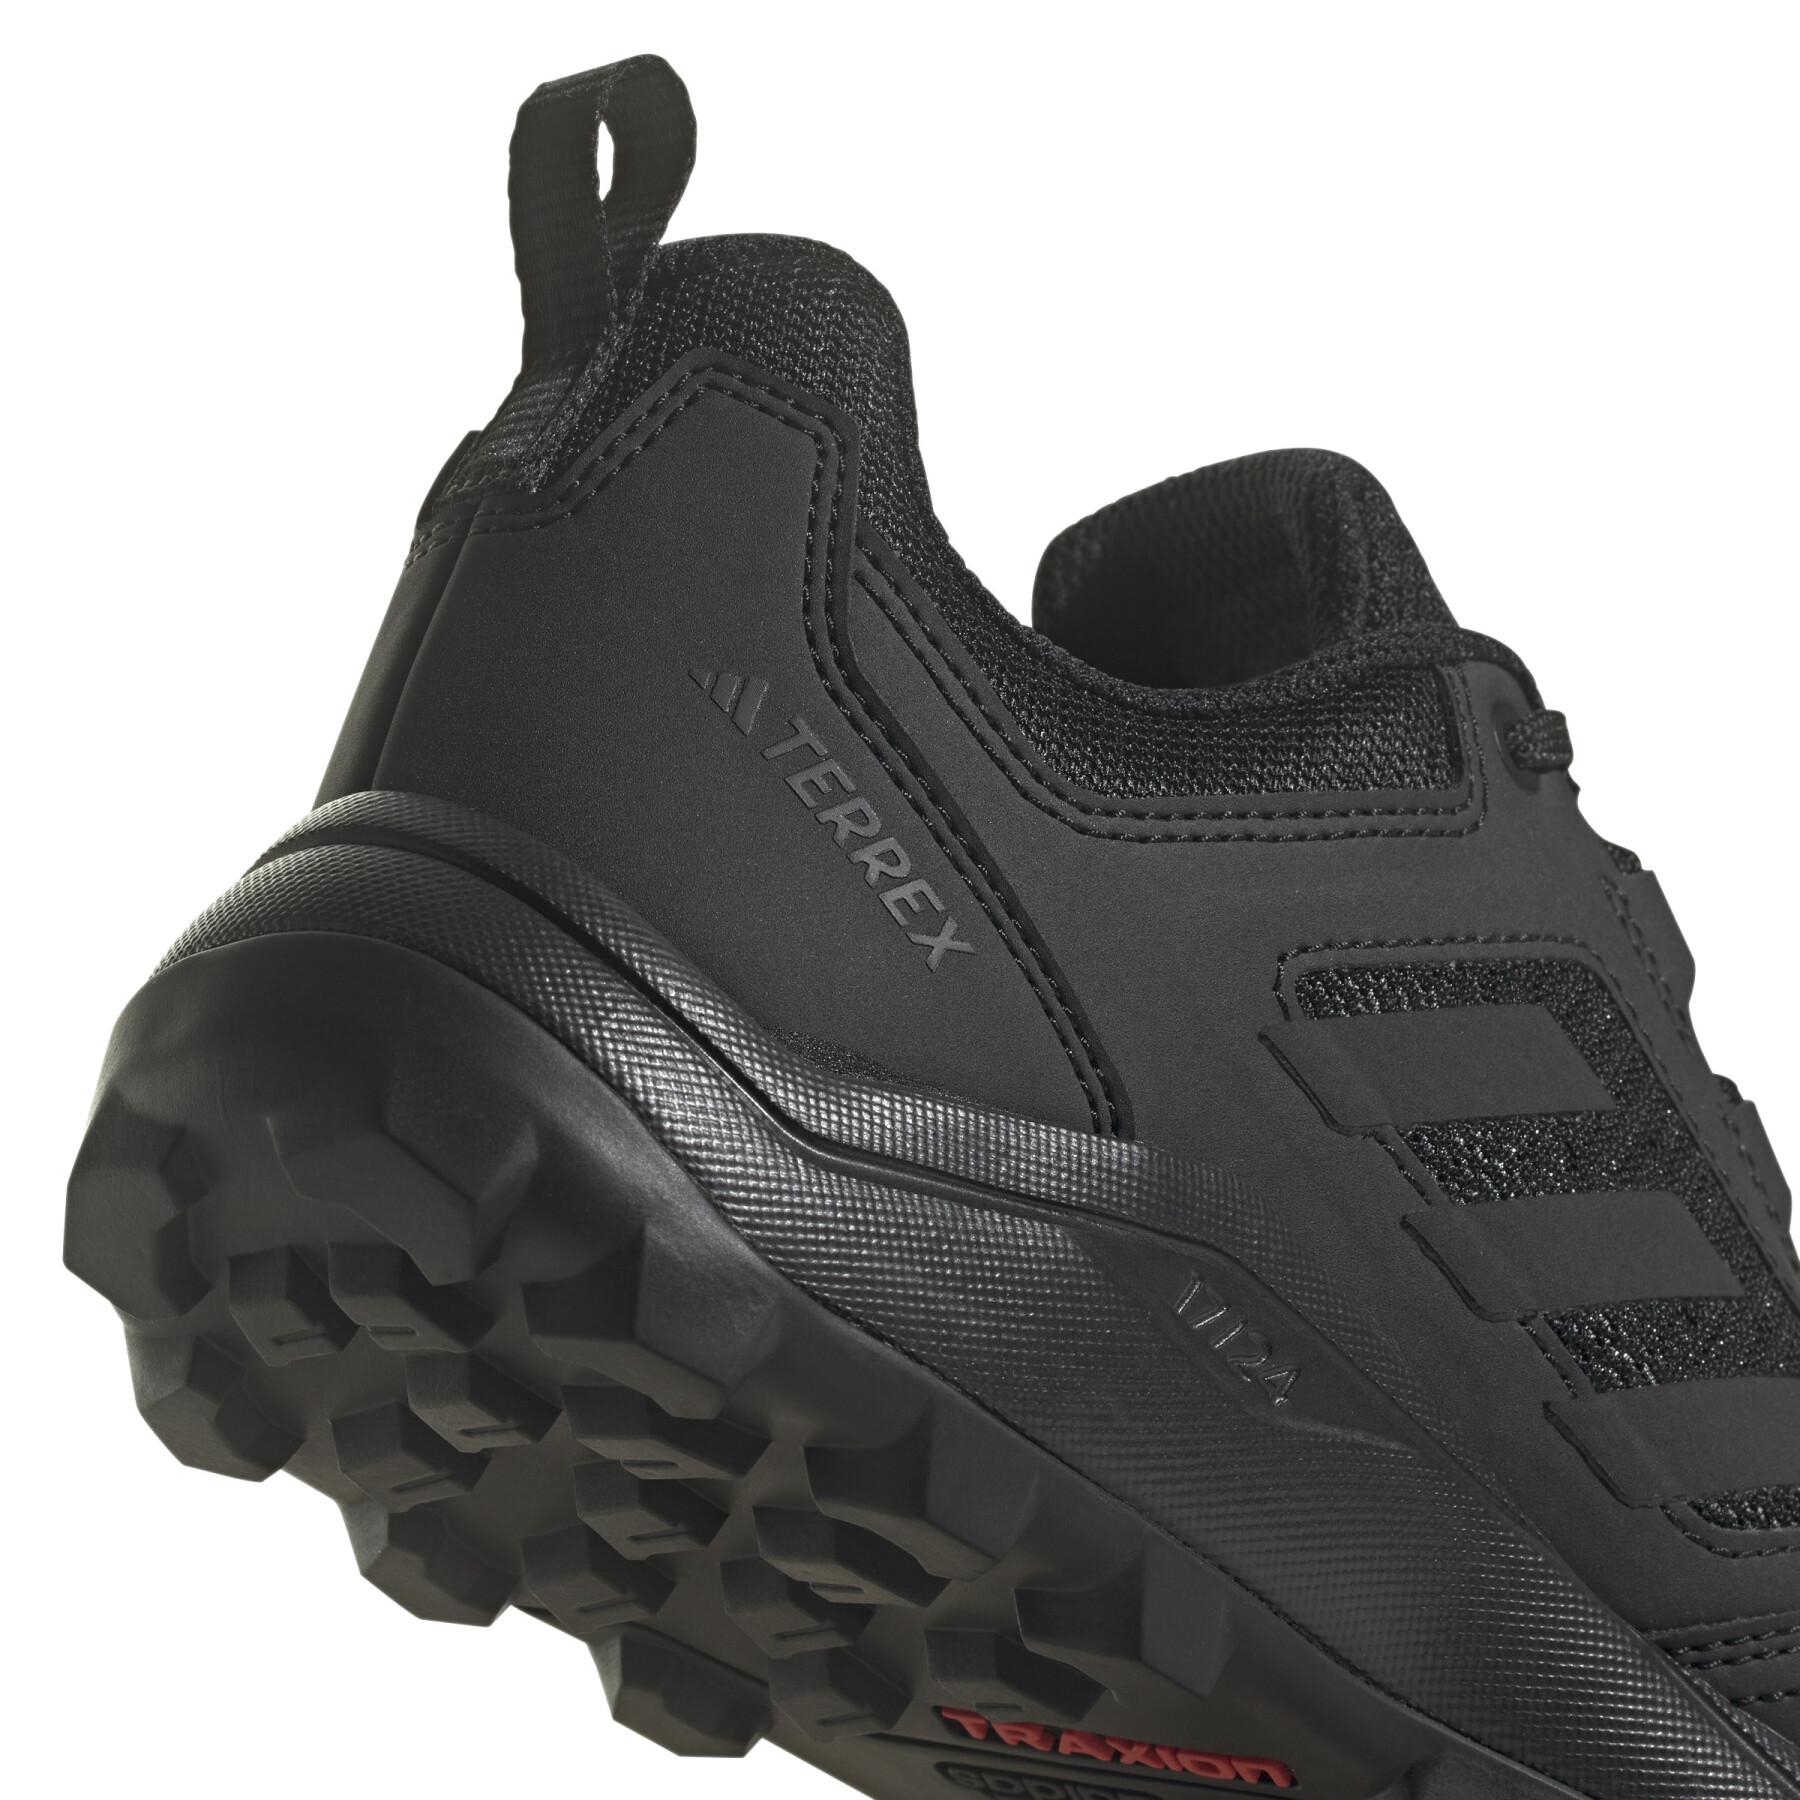 Women's trail shoes adidas Tracerocker 2.0